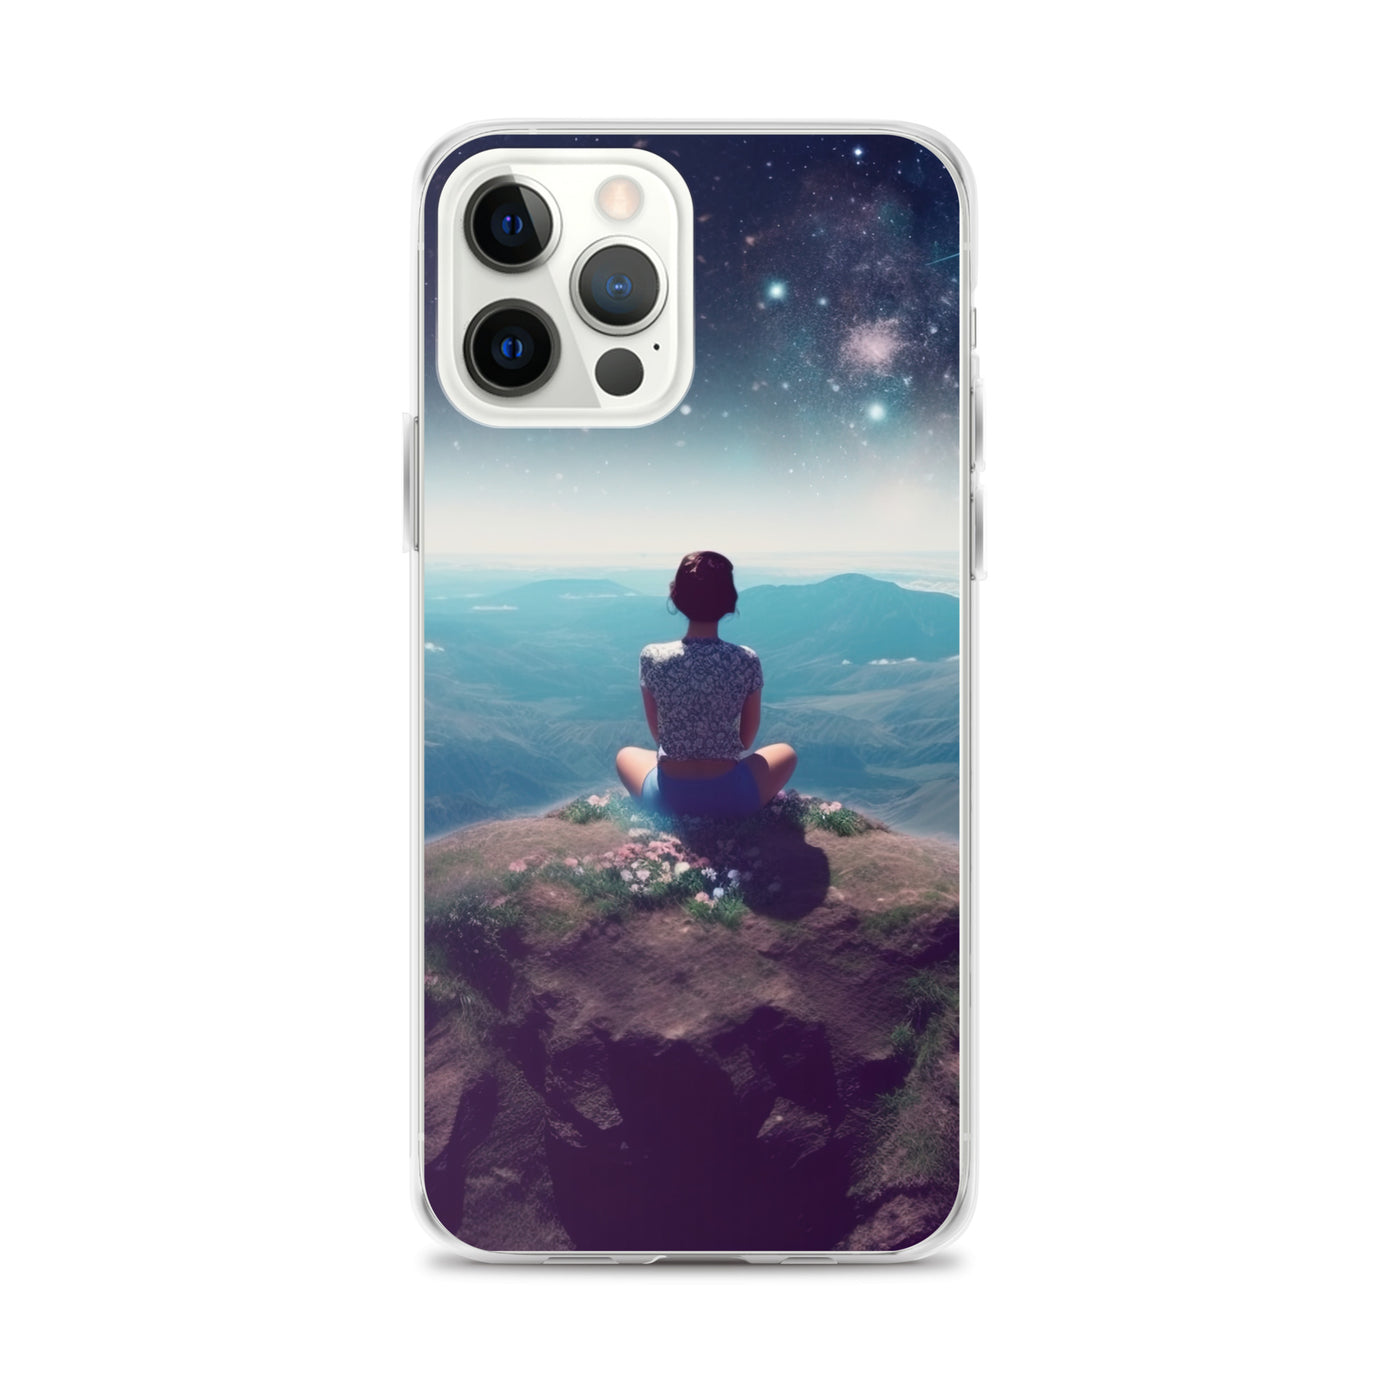 Frau sitzt auf Berg – Cosmos und Sterne im Hintergrund - Landschaftsmalerei - iPhone Schutzhülle (durchsichtig) berge xxx iPhone 12 Pro Max